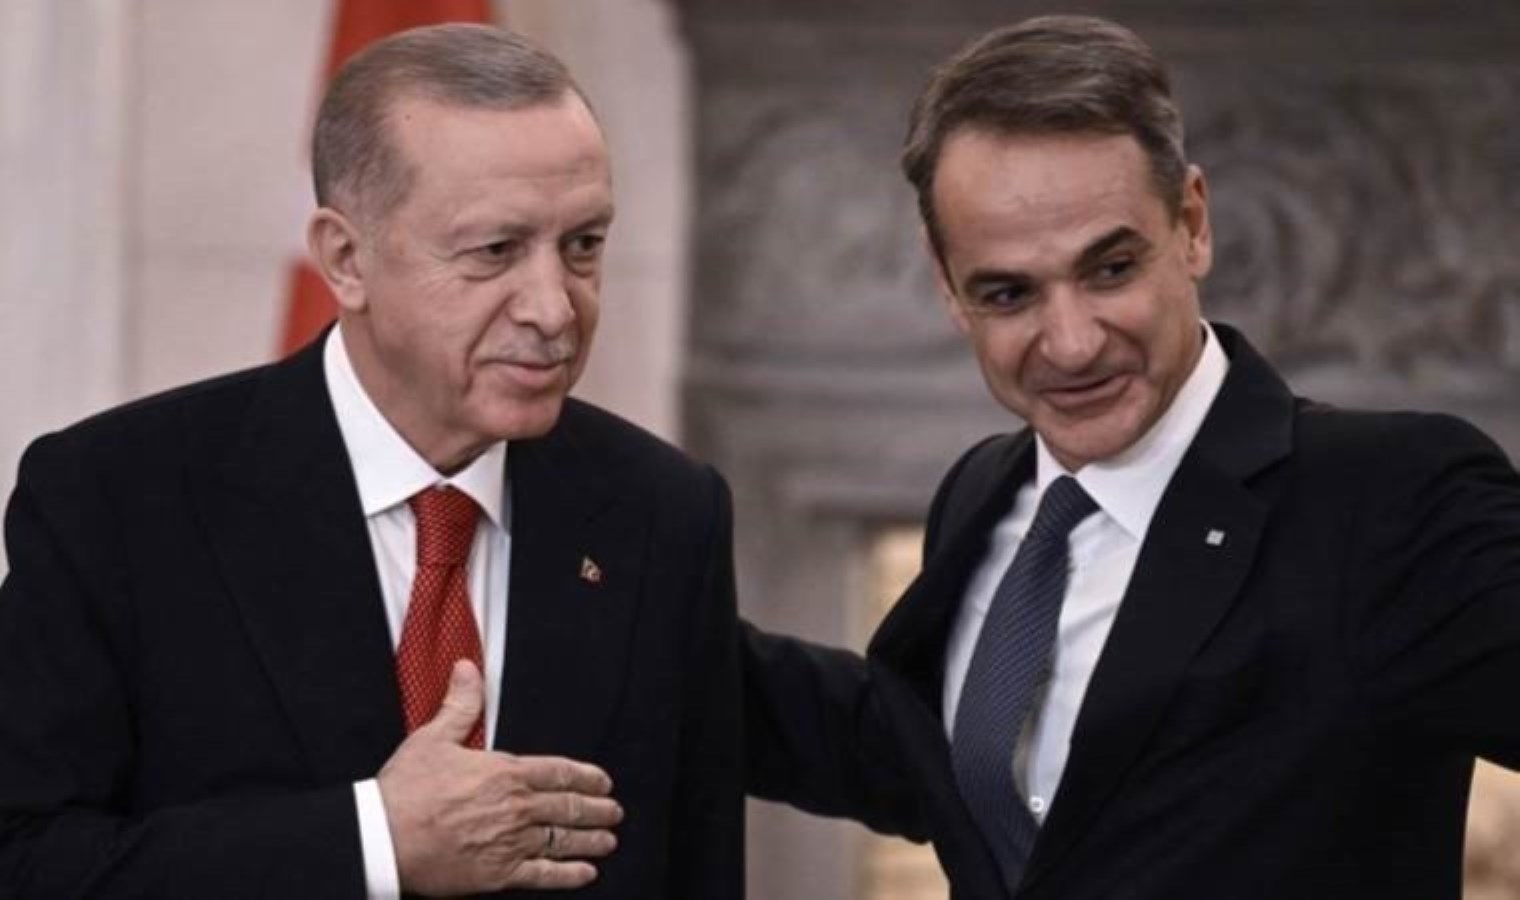 Ο Έλληνας πρωθυπουργός Μητσοτάκης θα συναντήσει τον Ερντογάν στην Άγκυρα: ποια θέματα είναι στο τραπέζι;  – Έκτακτες πολιτικές ειδήσεις